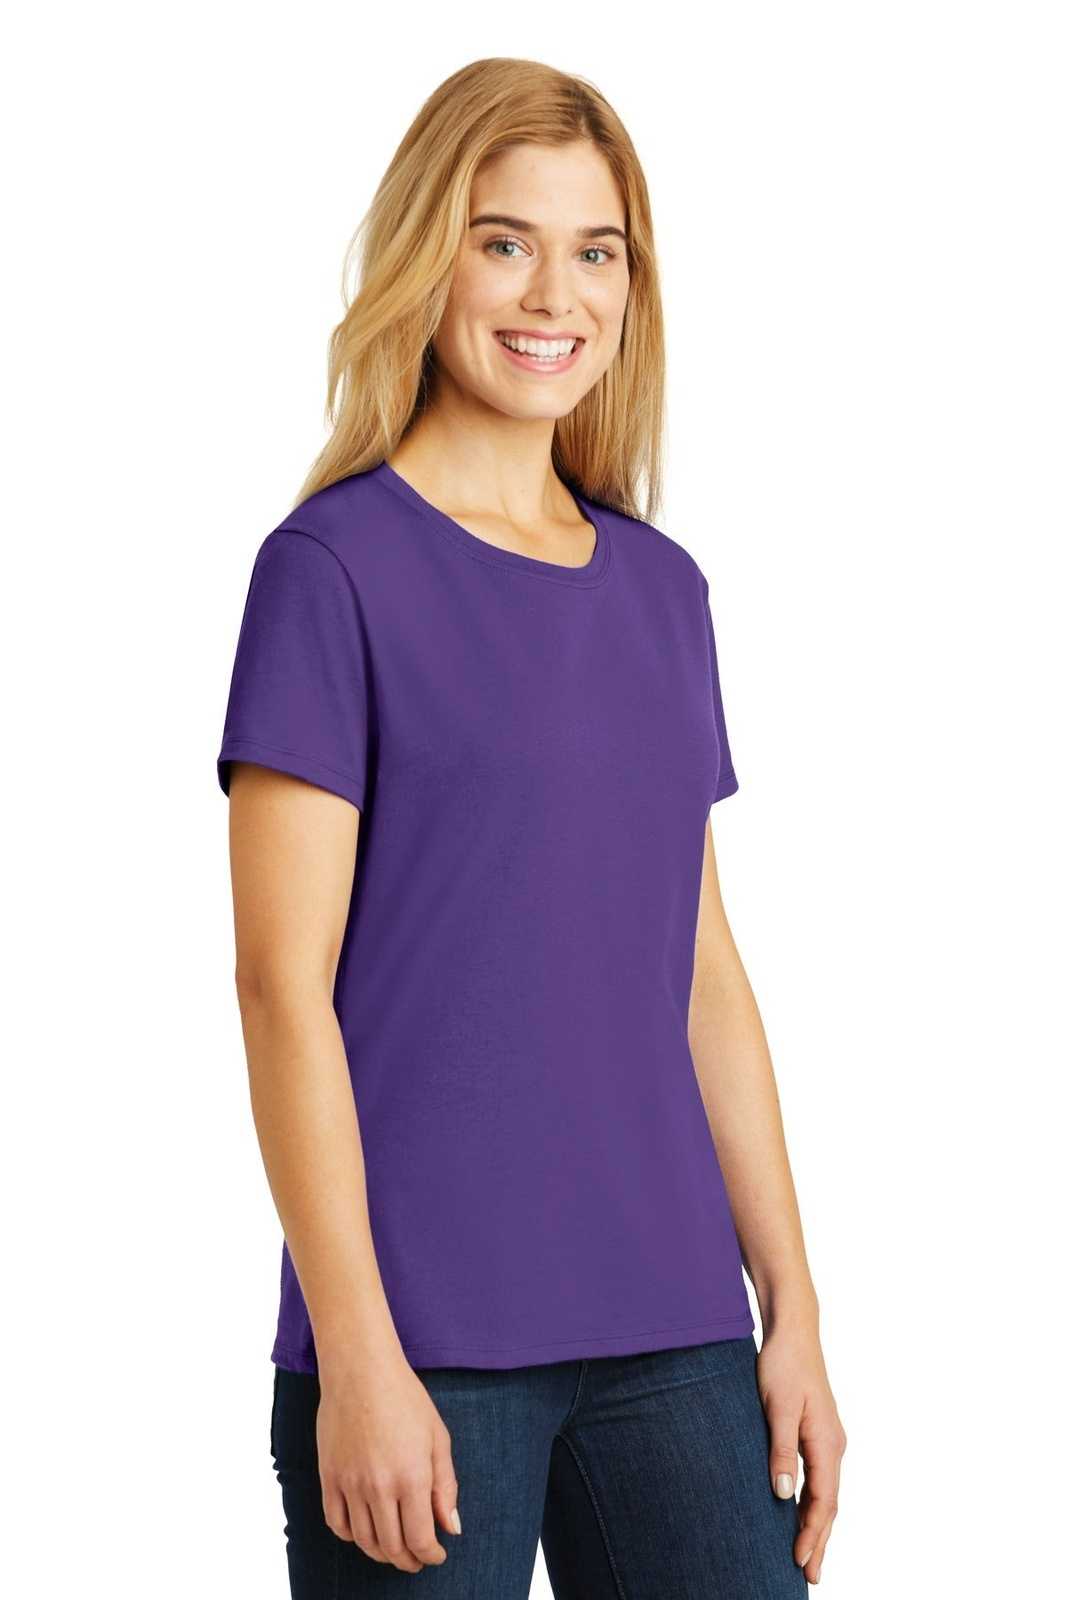 Hanes SL04 Ladies Nano-T Cotton T-Shirt - Purple - HIT a Double